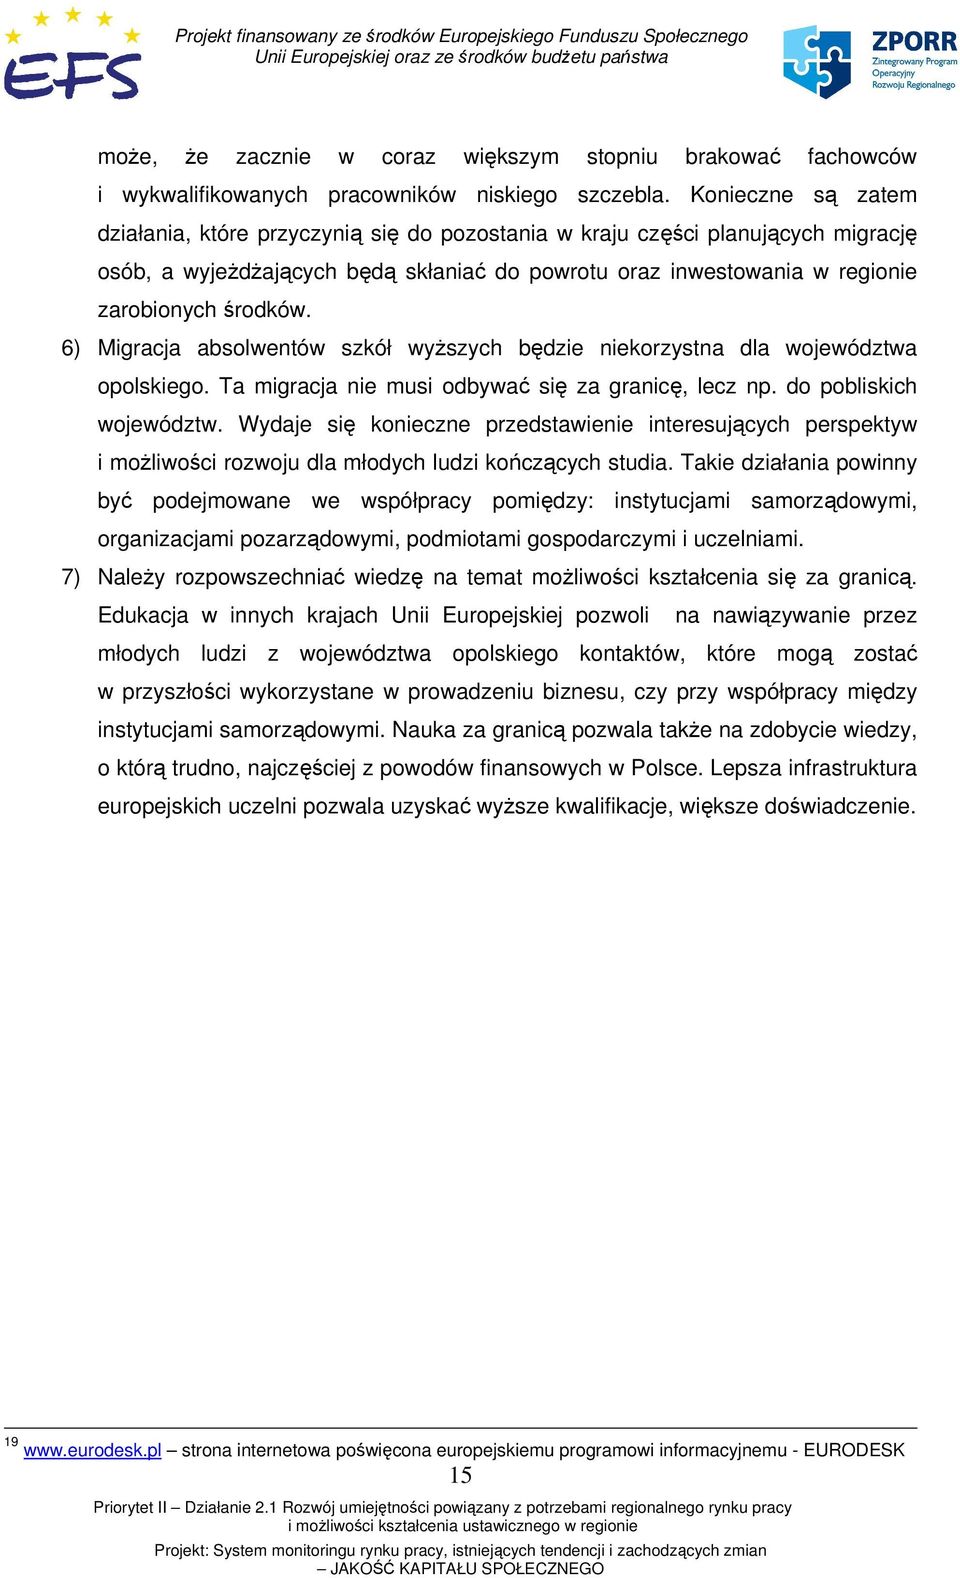 6) Migracja absolwentów szkół wyższych będzie niekorzystna dla województwa opolskiego. Ta migracja nie musi odbywać się za granicę, lecz np. do pobliskich województw.